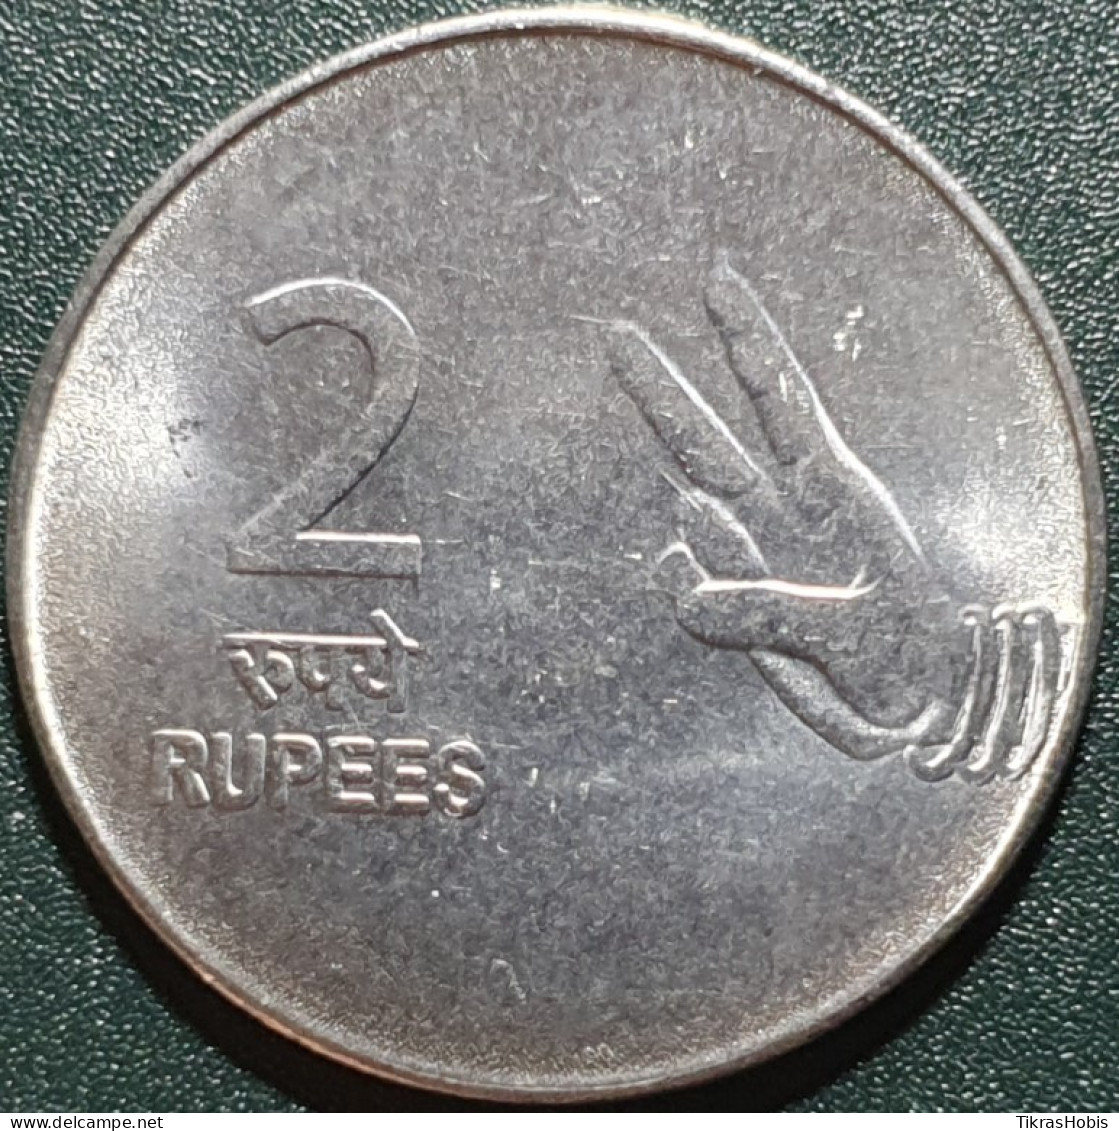 India 2 Rupees, 2009 Km327 - India